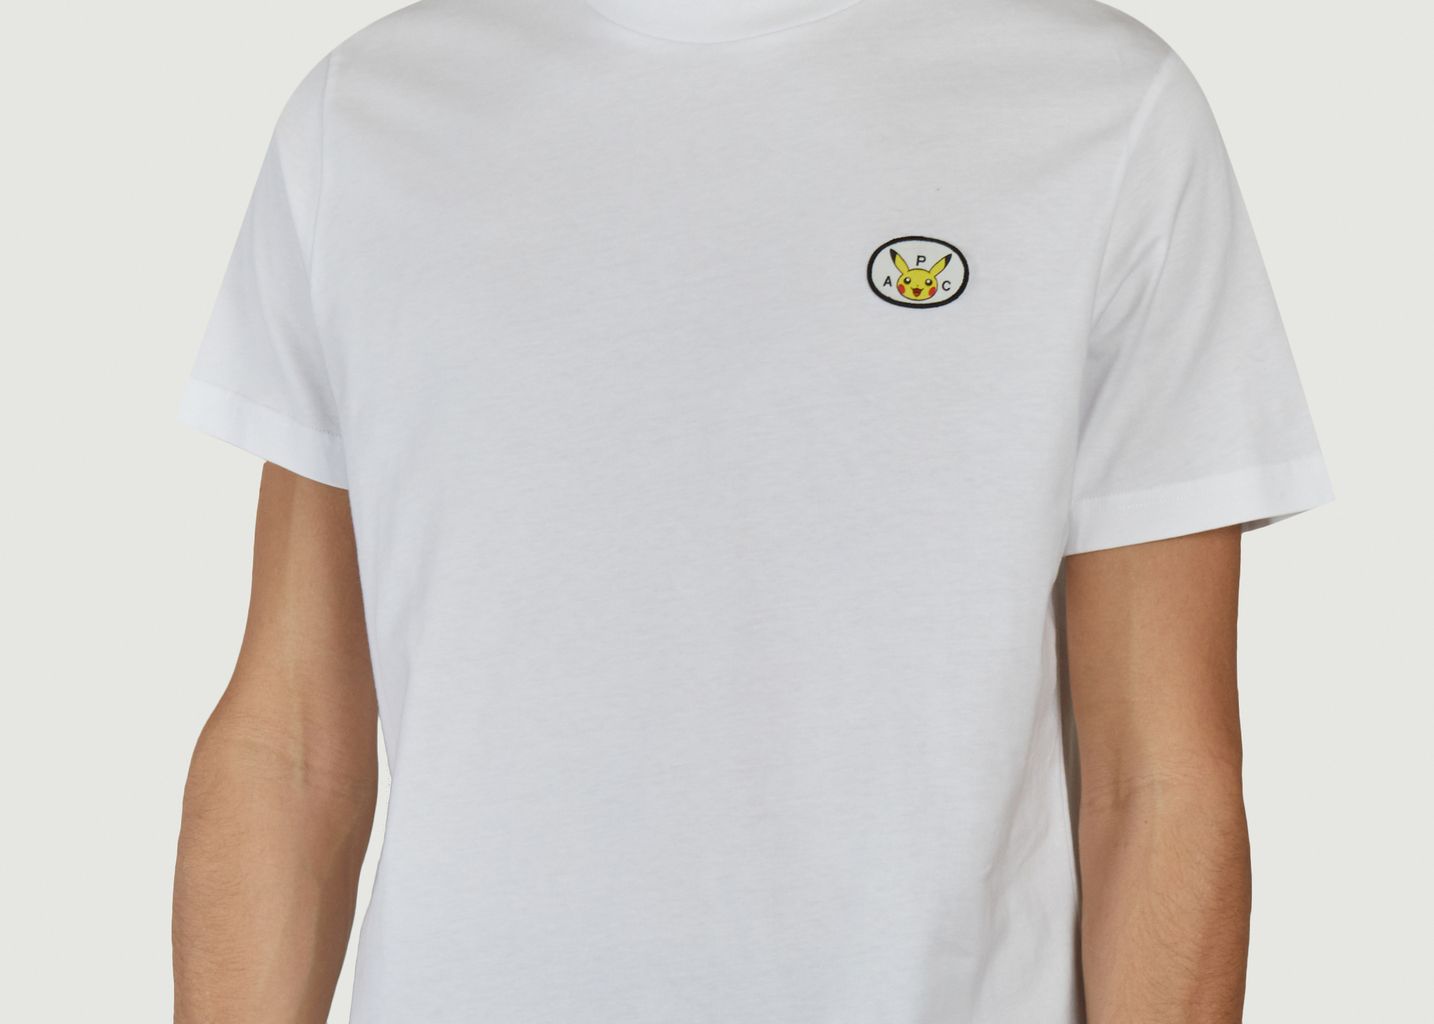 T-Shirt mit Pikachu-Patch Pokémon x A.P.C. - A.P.C.